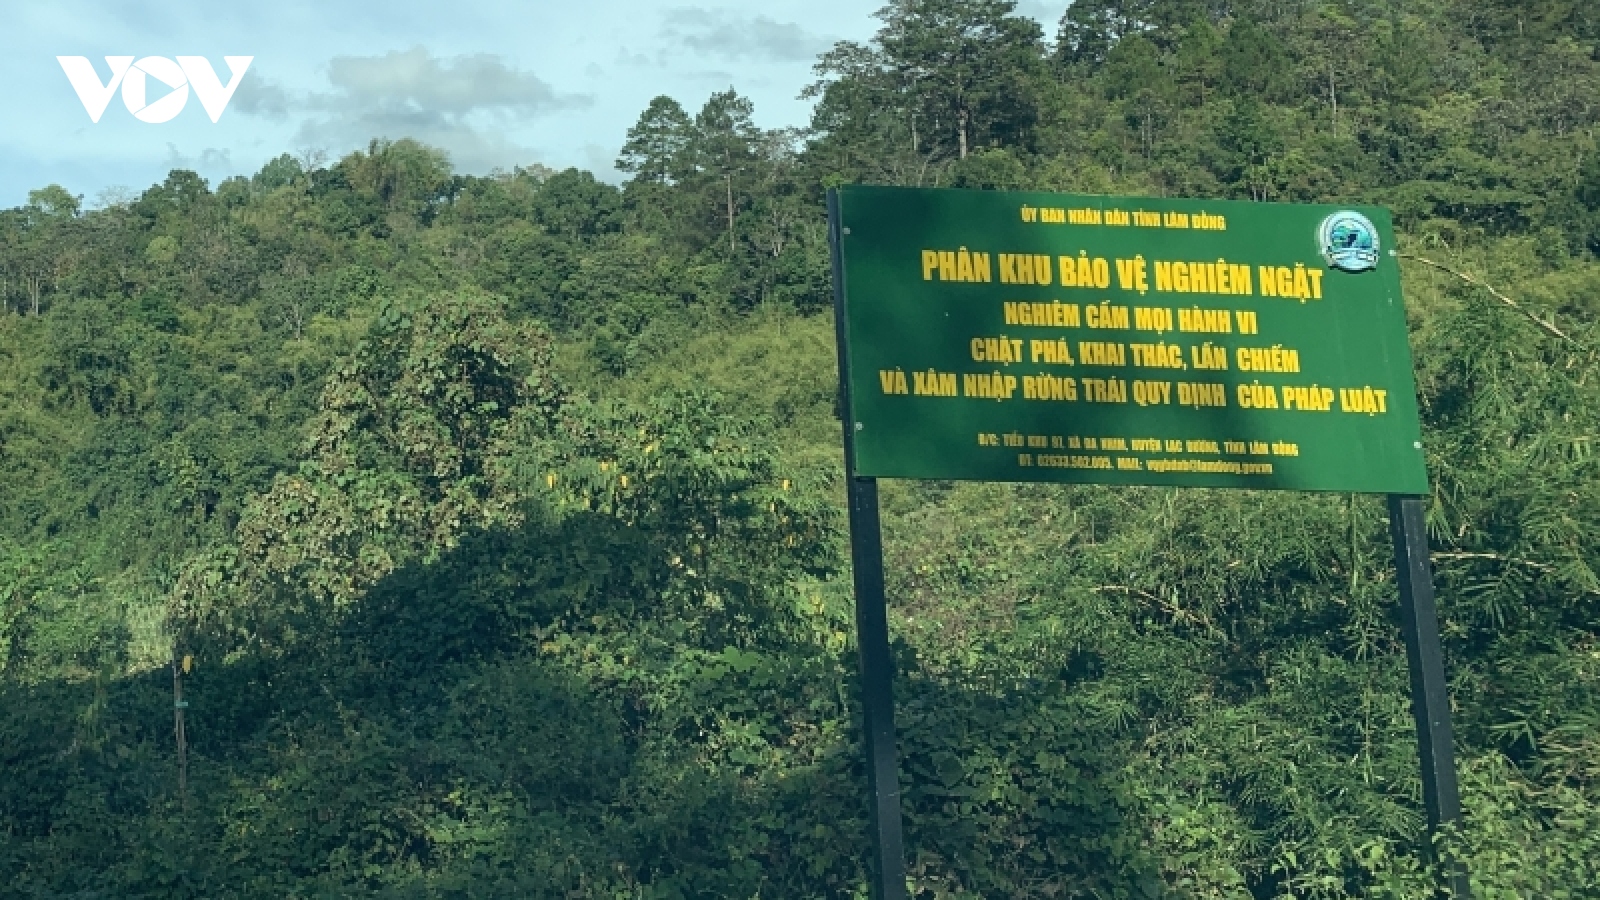 Cận cảnh rừng Quốc gia tại Đắk Lắk, Lâm Đồng bị phá để làm đường khi chưa được phép